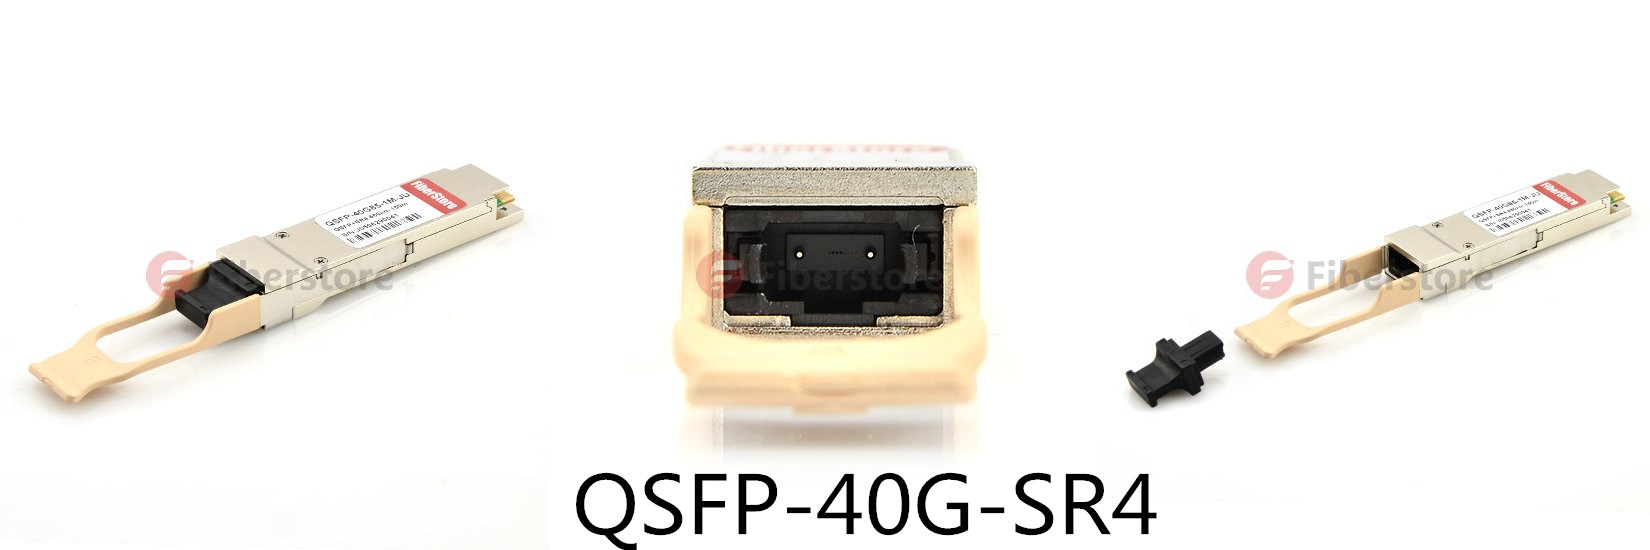 QSFP-40G-SR4